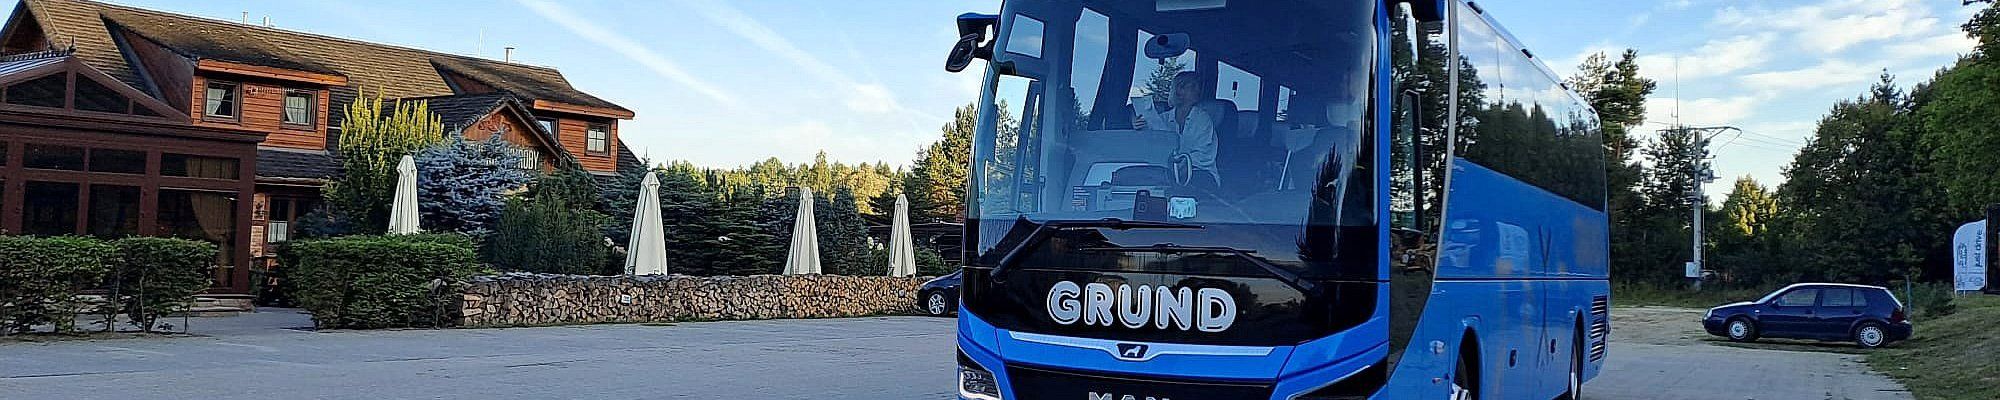 Grund Omnibusbetrieb - Ihr Buspartner in der Region Hannover